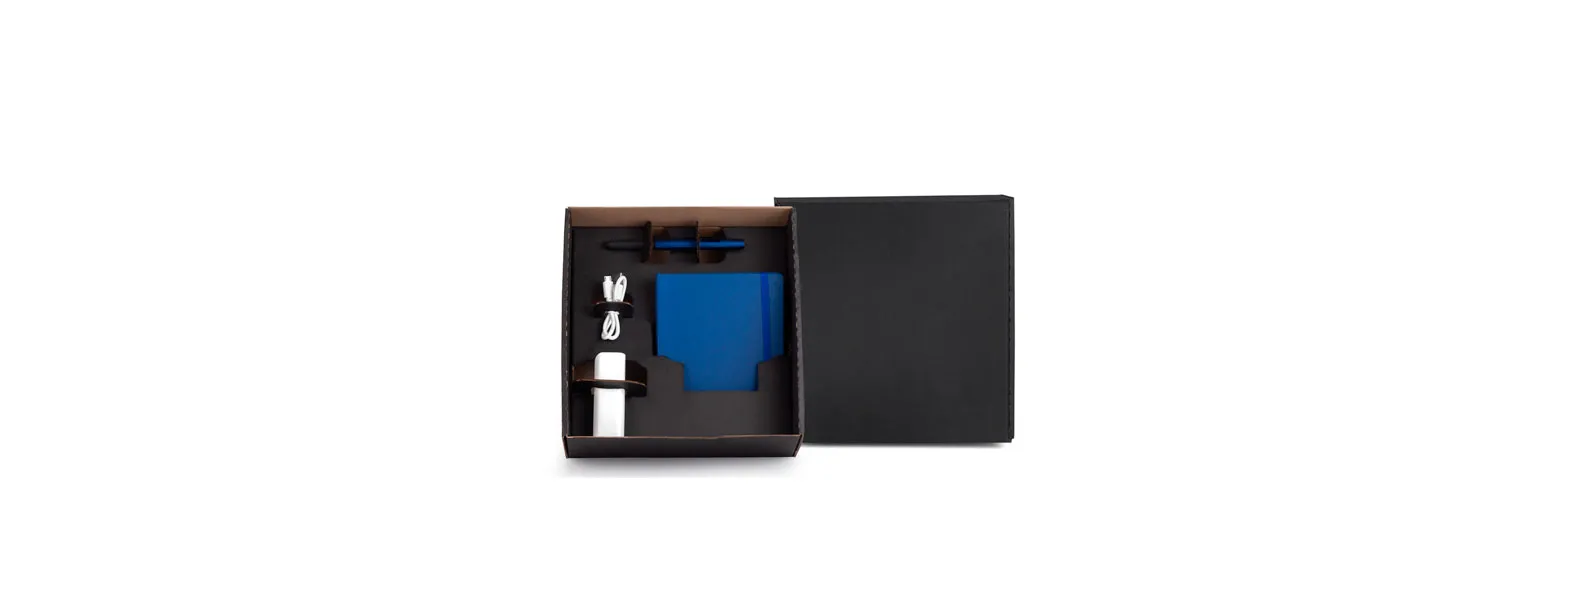 Kit composto por carregador portátil USB em plástico ABS para celular/smartphone/Tablet; caderno para anotações azul com capa dura e caneta esferográfica em ABS azul.